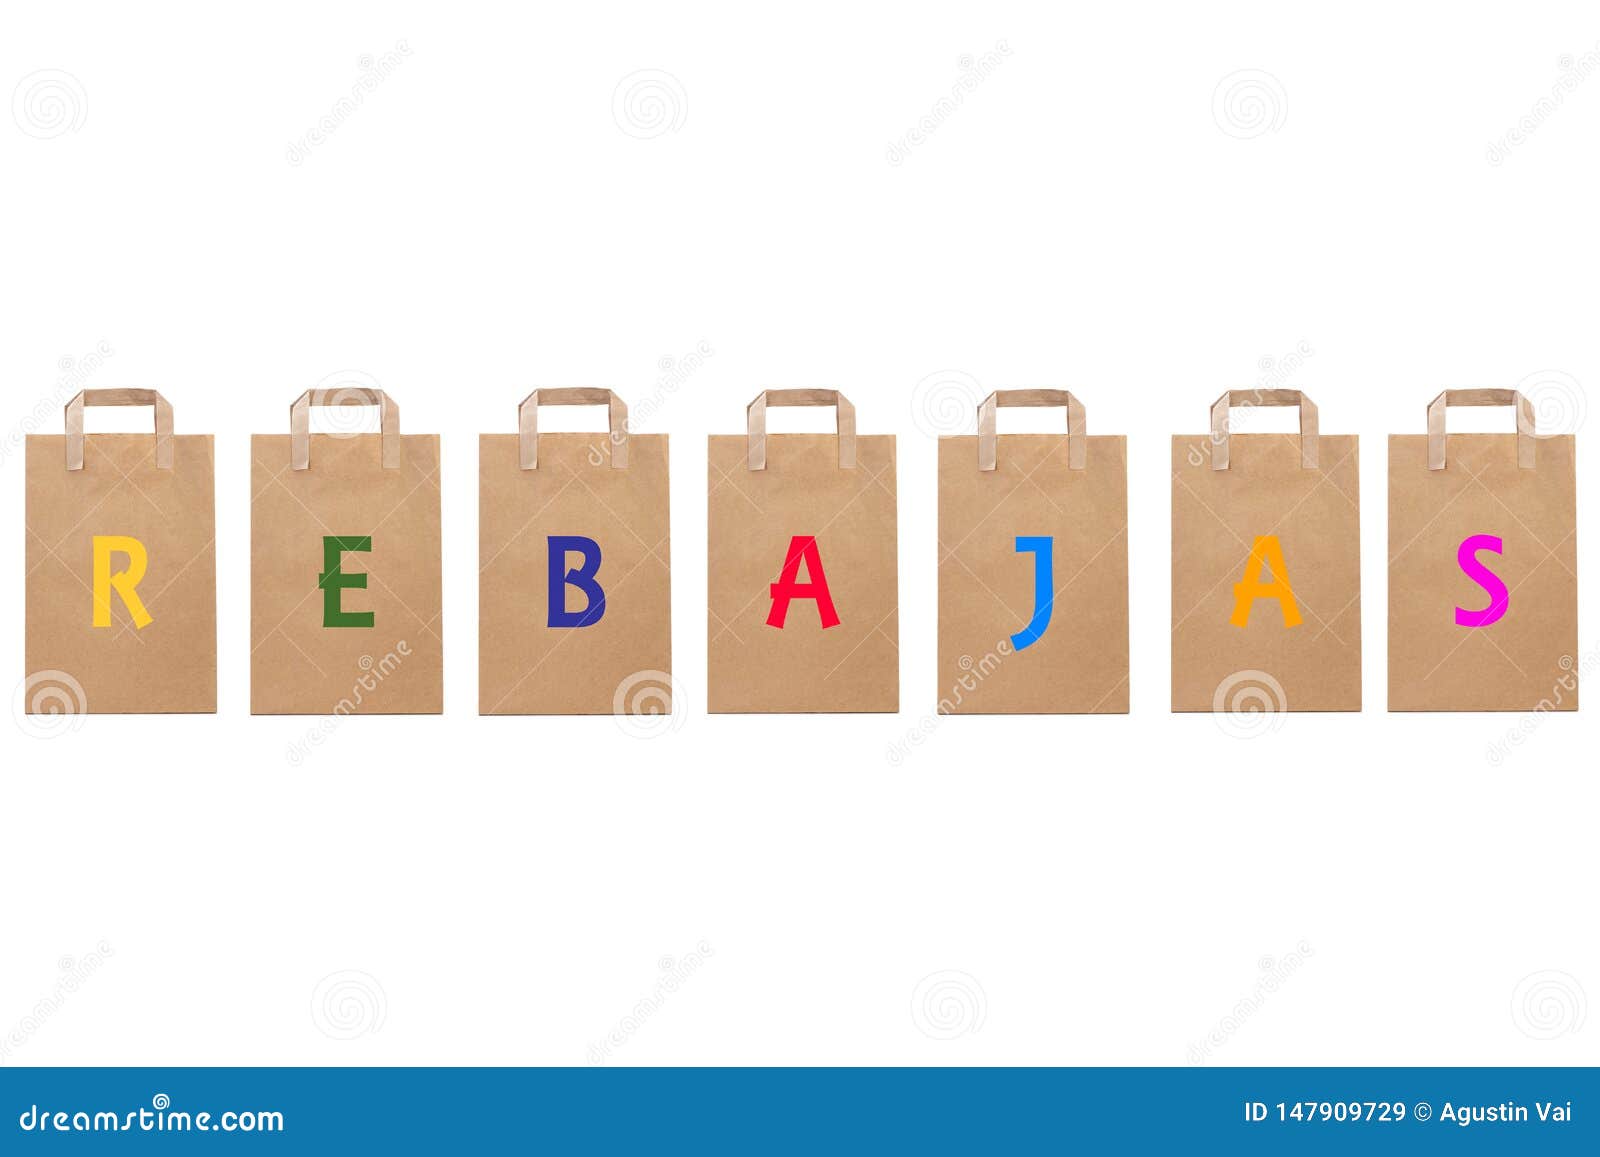 rebajas sale word write in different paper bags